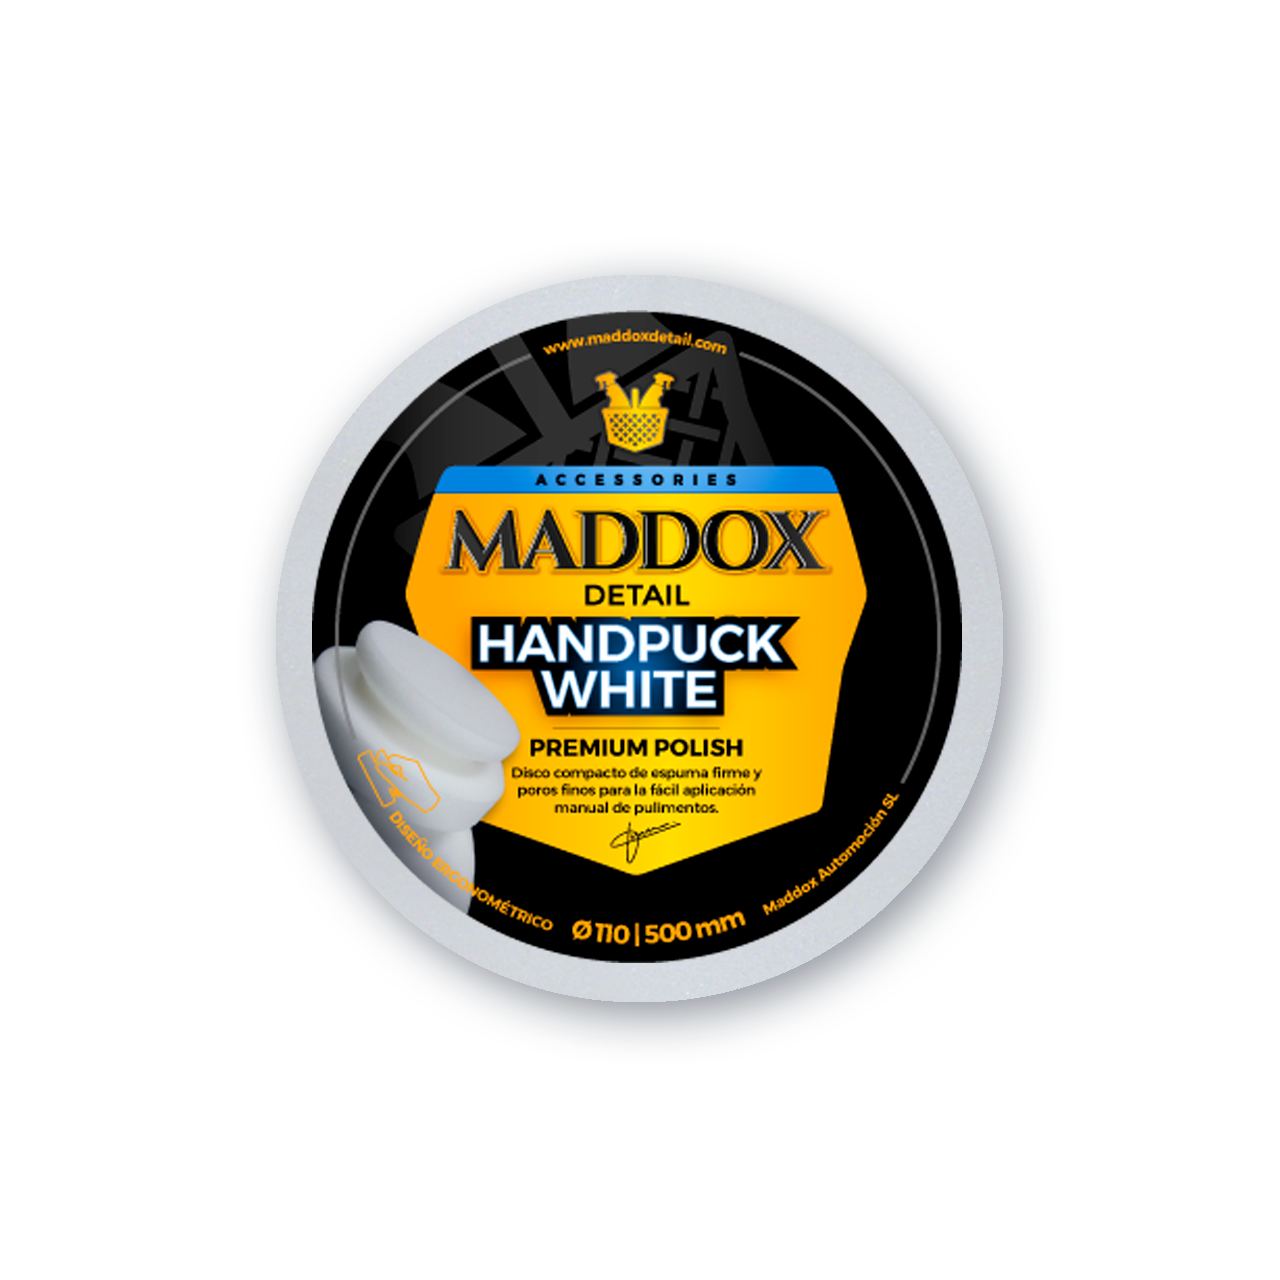 Maddox Detail Hydro Ceramic Sellador Cerámico Y Abrillantador De